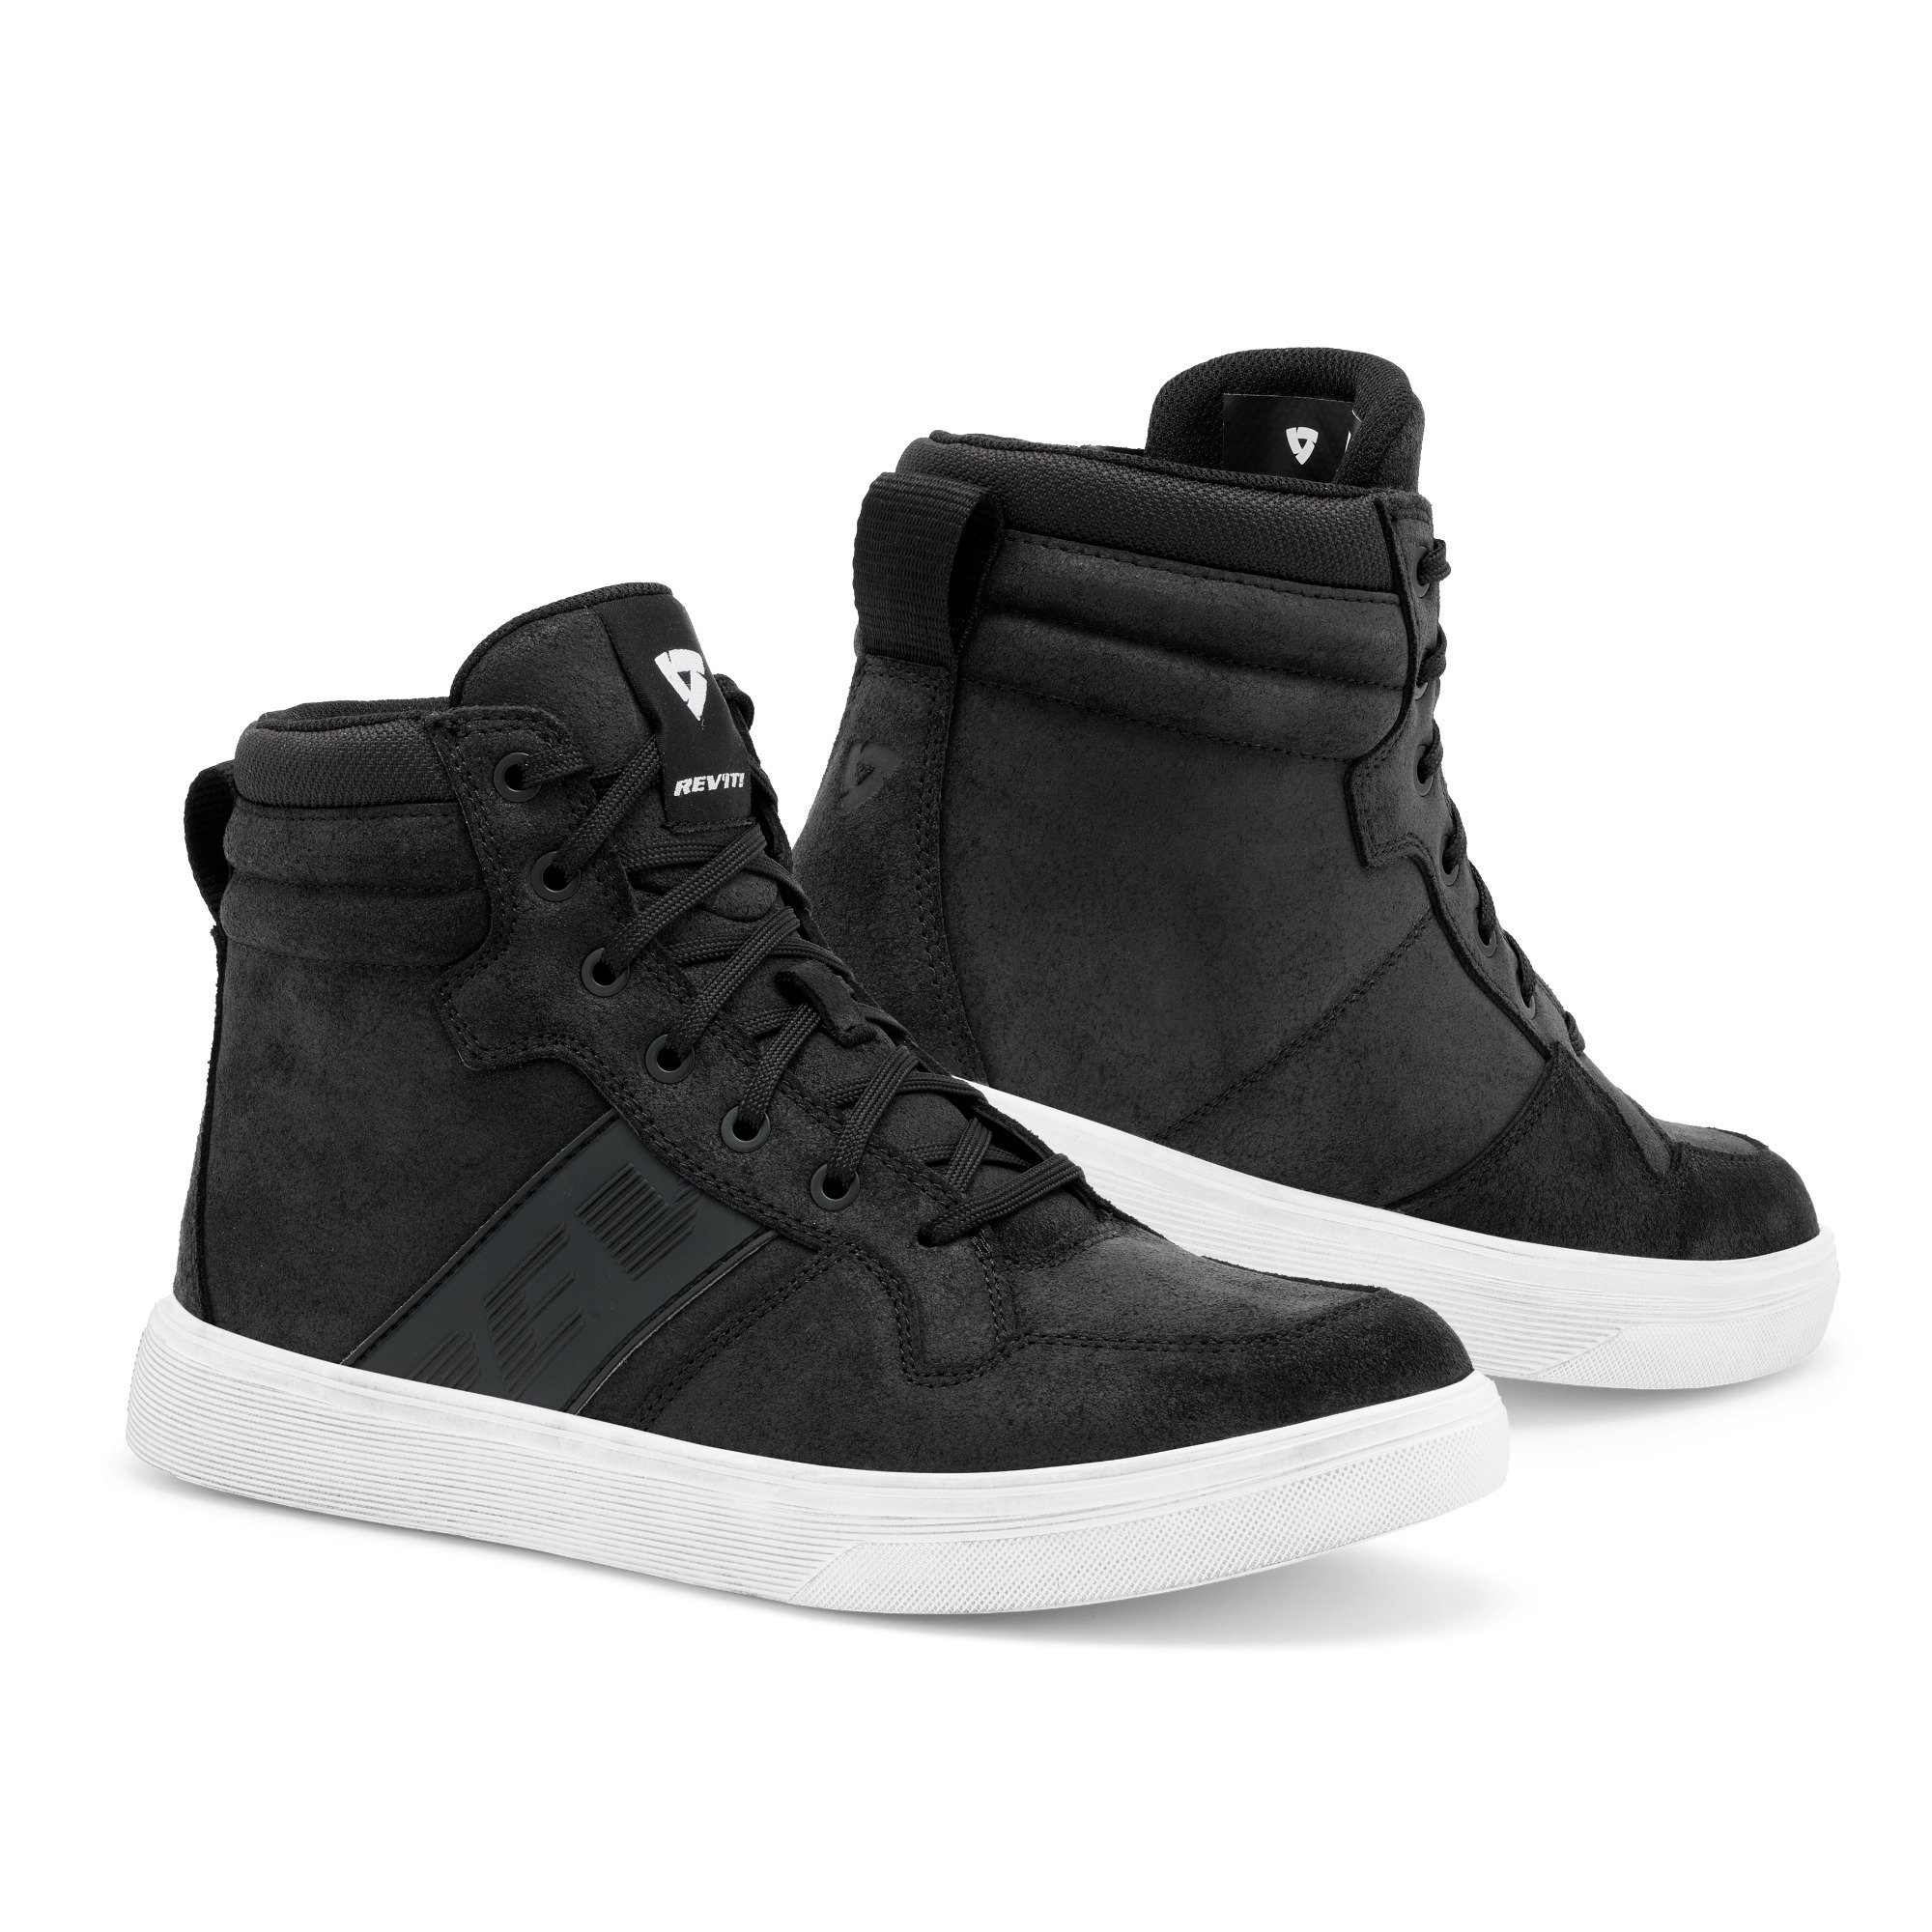 Image of REV'IT! Kick Shoes Black White Size 40 ID 8700001357487